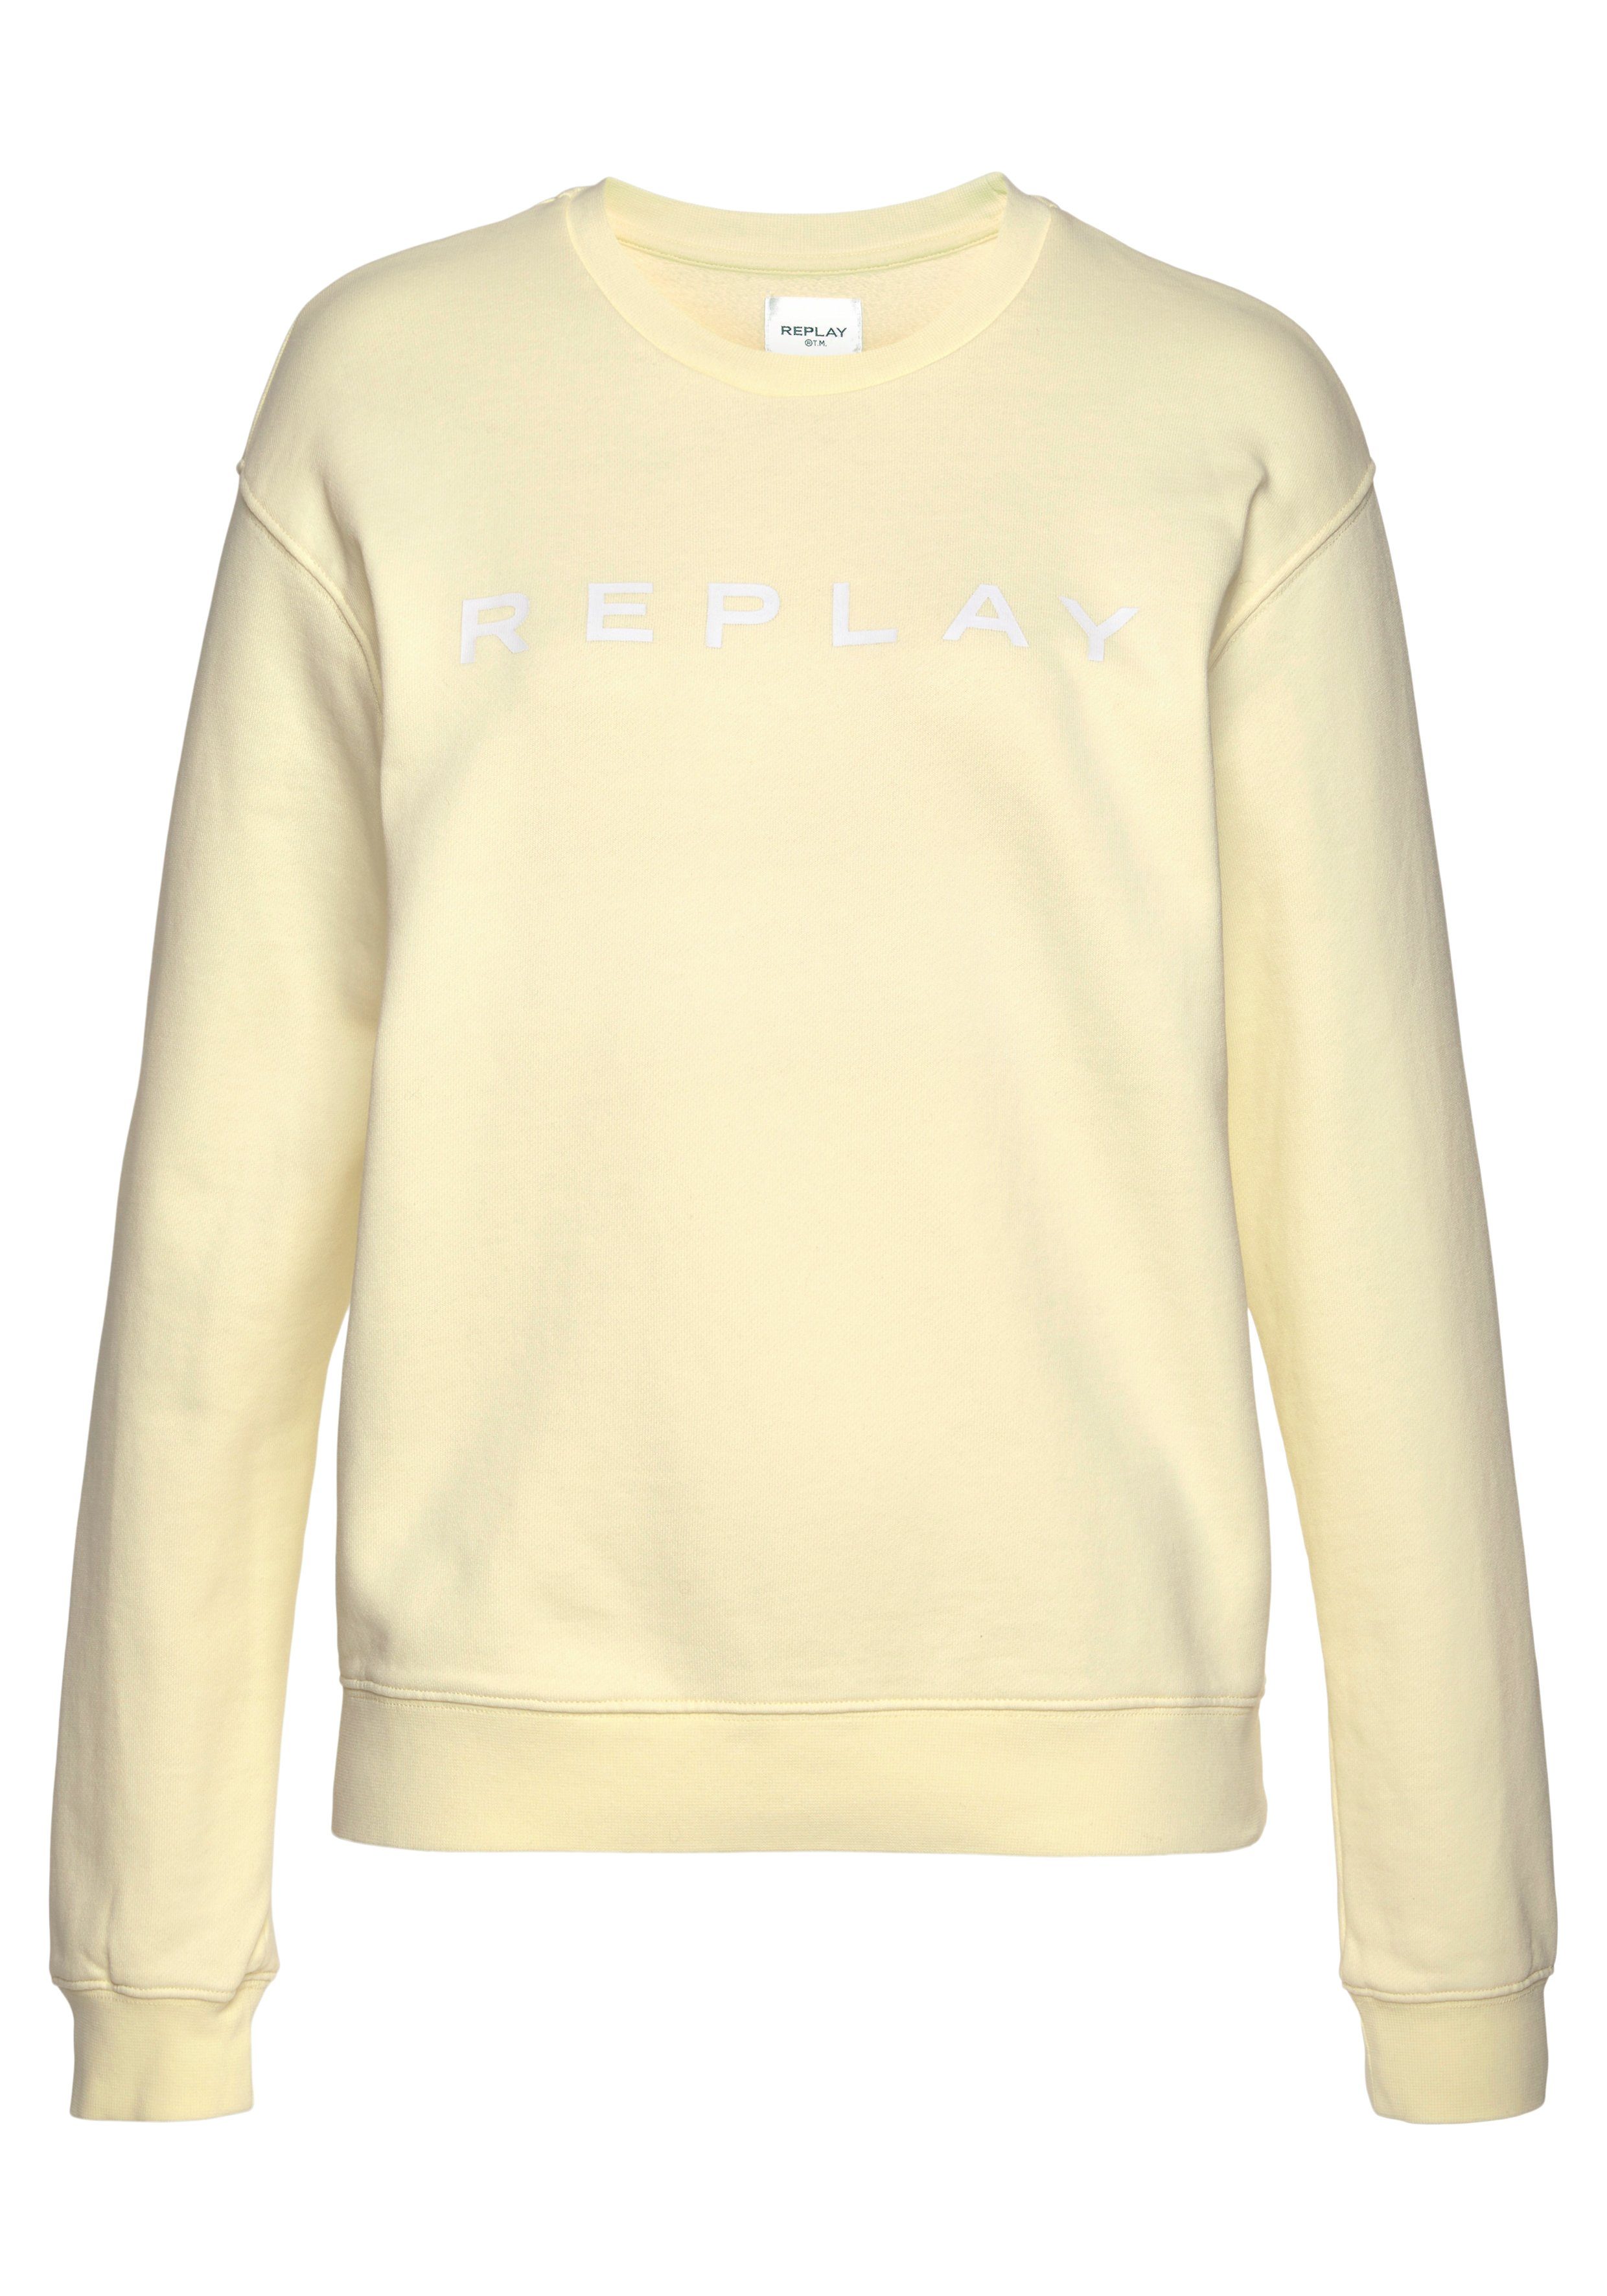 Replay Sweater aus reiner Baumwolle online kaufen | OTTO